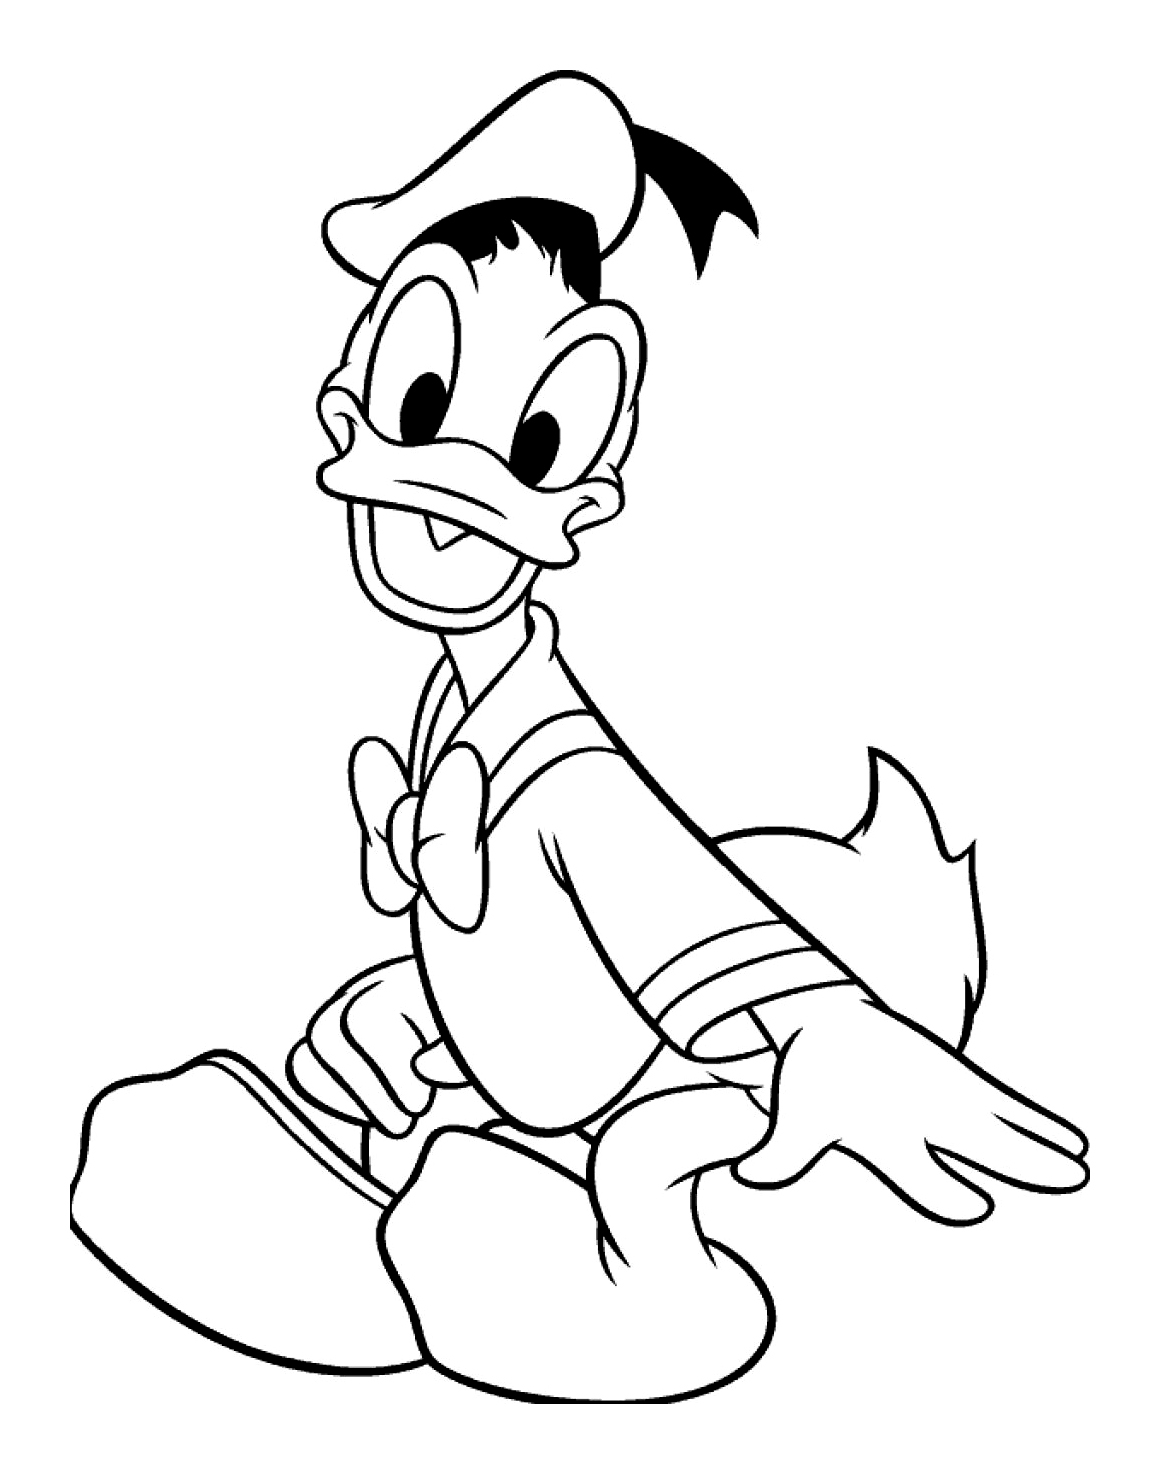 Donald souriant, un des personnages les plus anciens de Disney